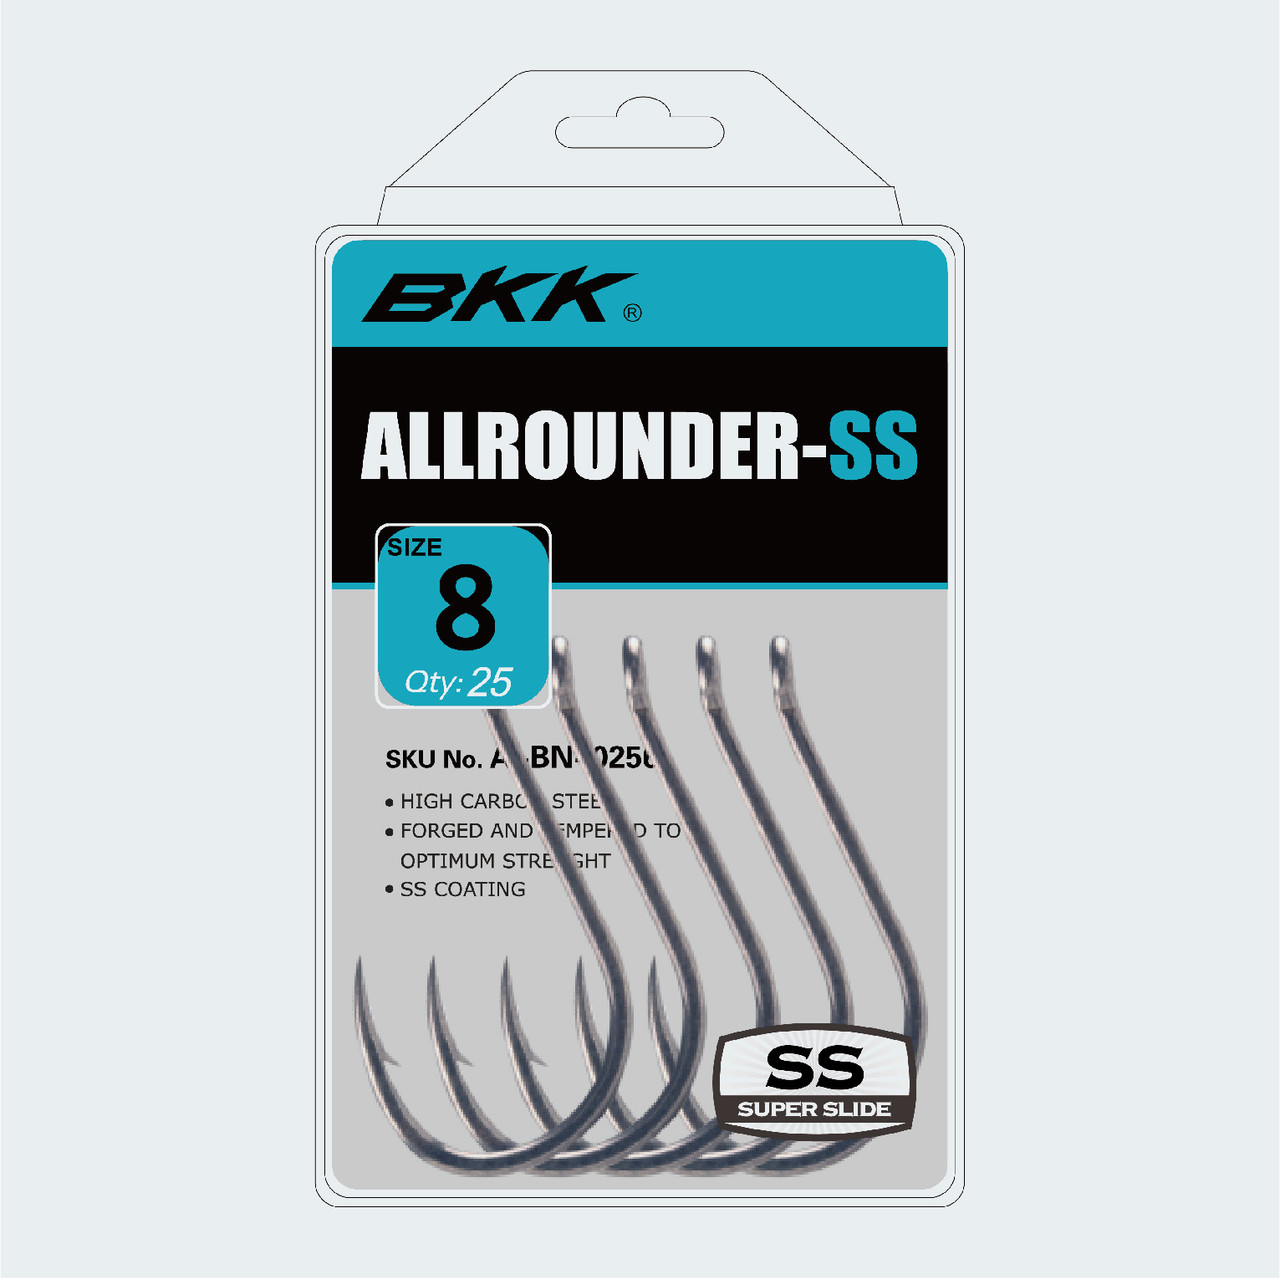 BKK Allrounder-SS Hooks · 1 · 8 Pk.